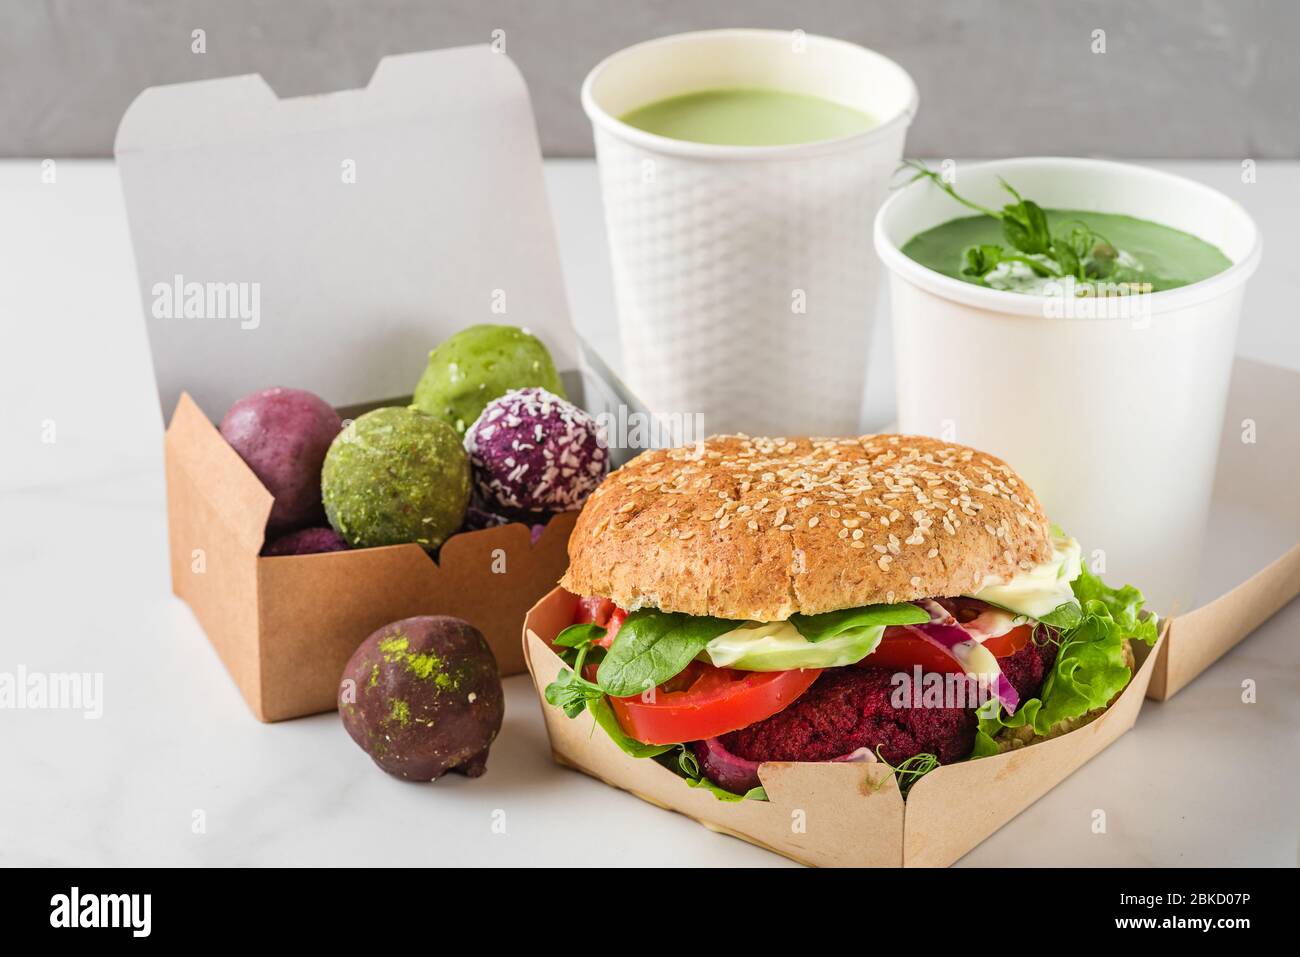 Consegna di cibo. Hamburger di barbabietola vegan e palle energetiche in scatole di carta ecologica con zuppa di panna di piselli e latte opaco in tazze monouso. Pranzo con dieta sana per la ta Foto Stock